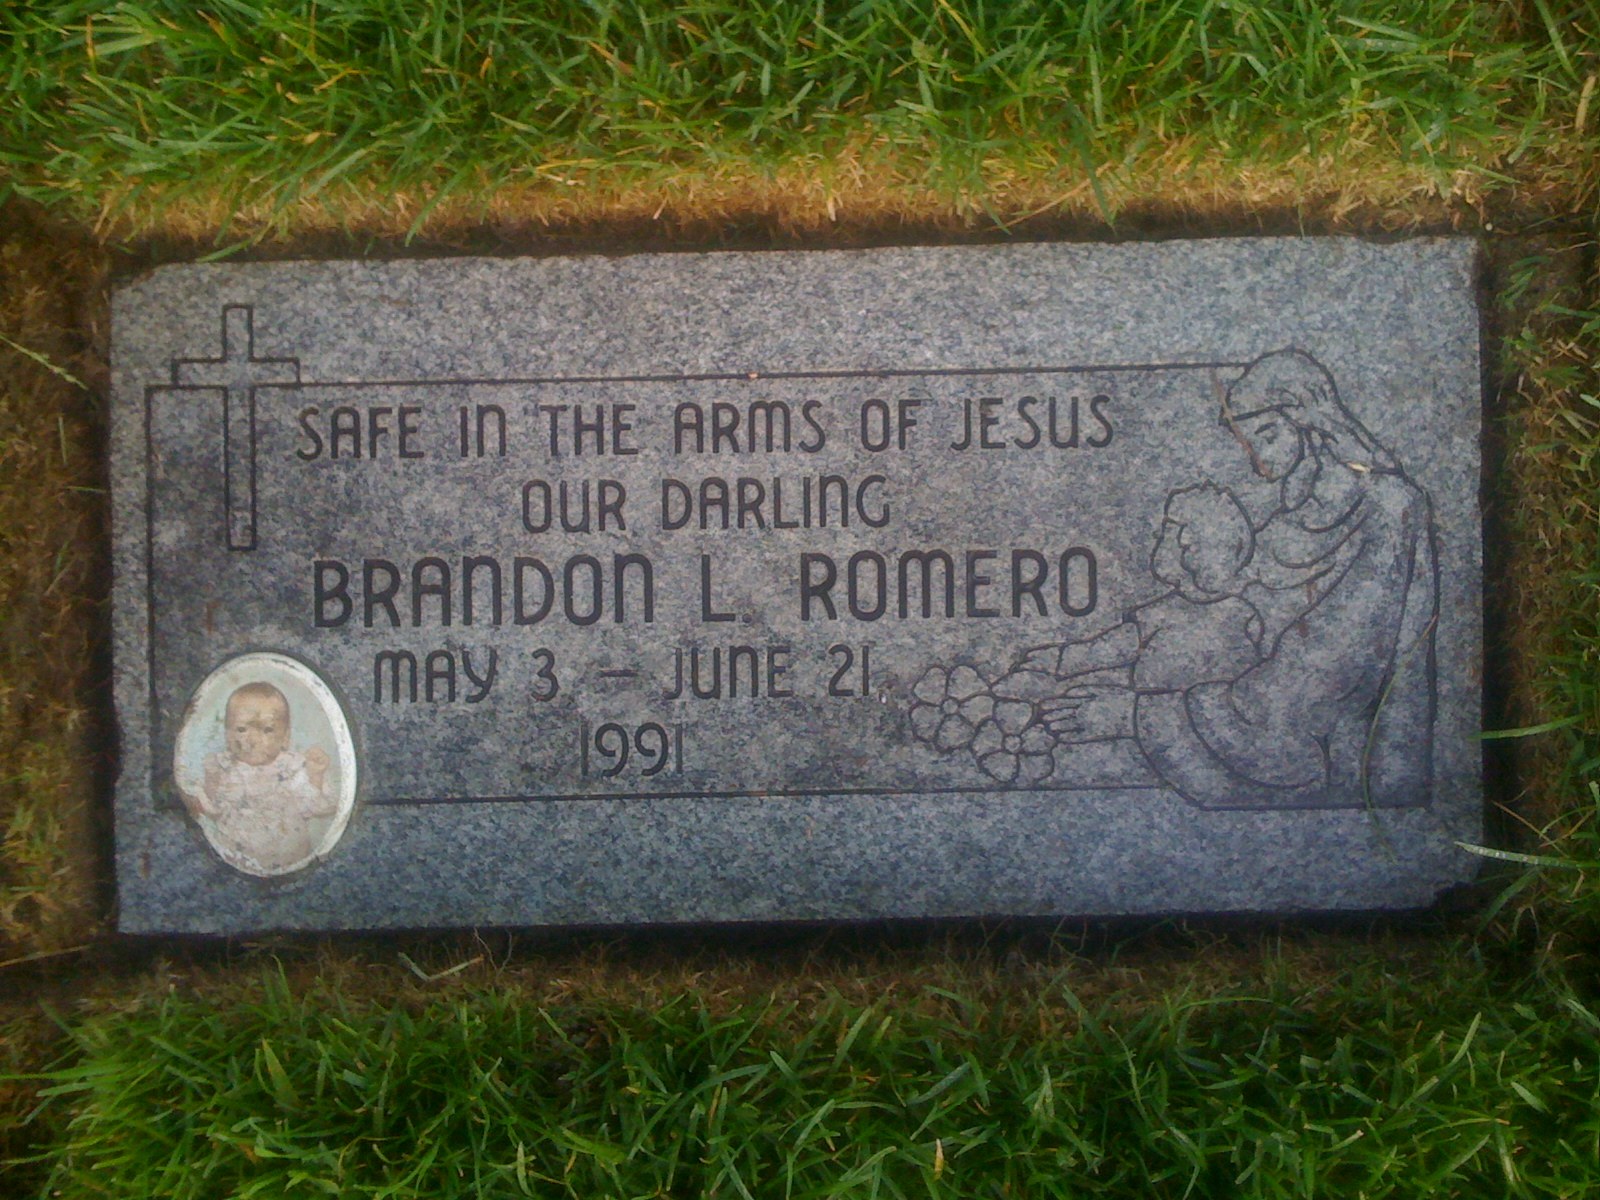 Brandon L Romero